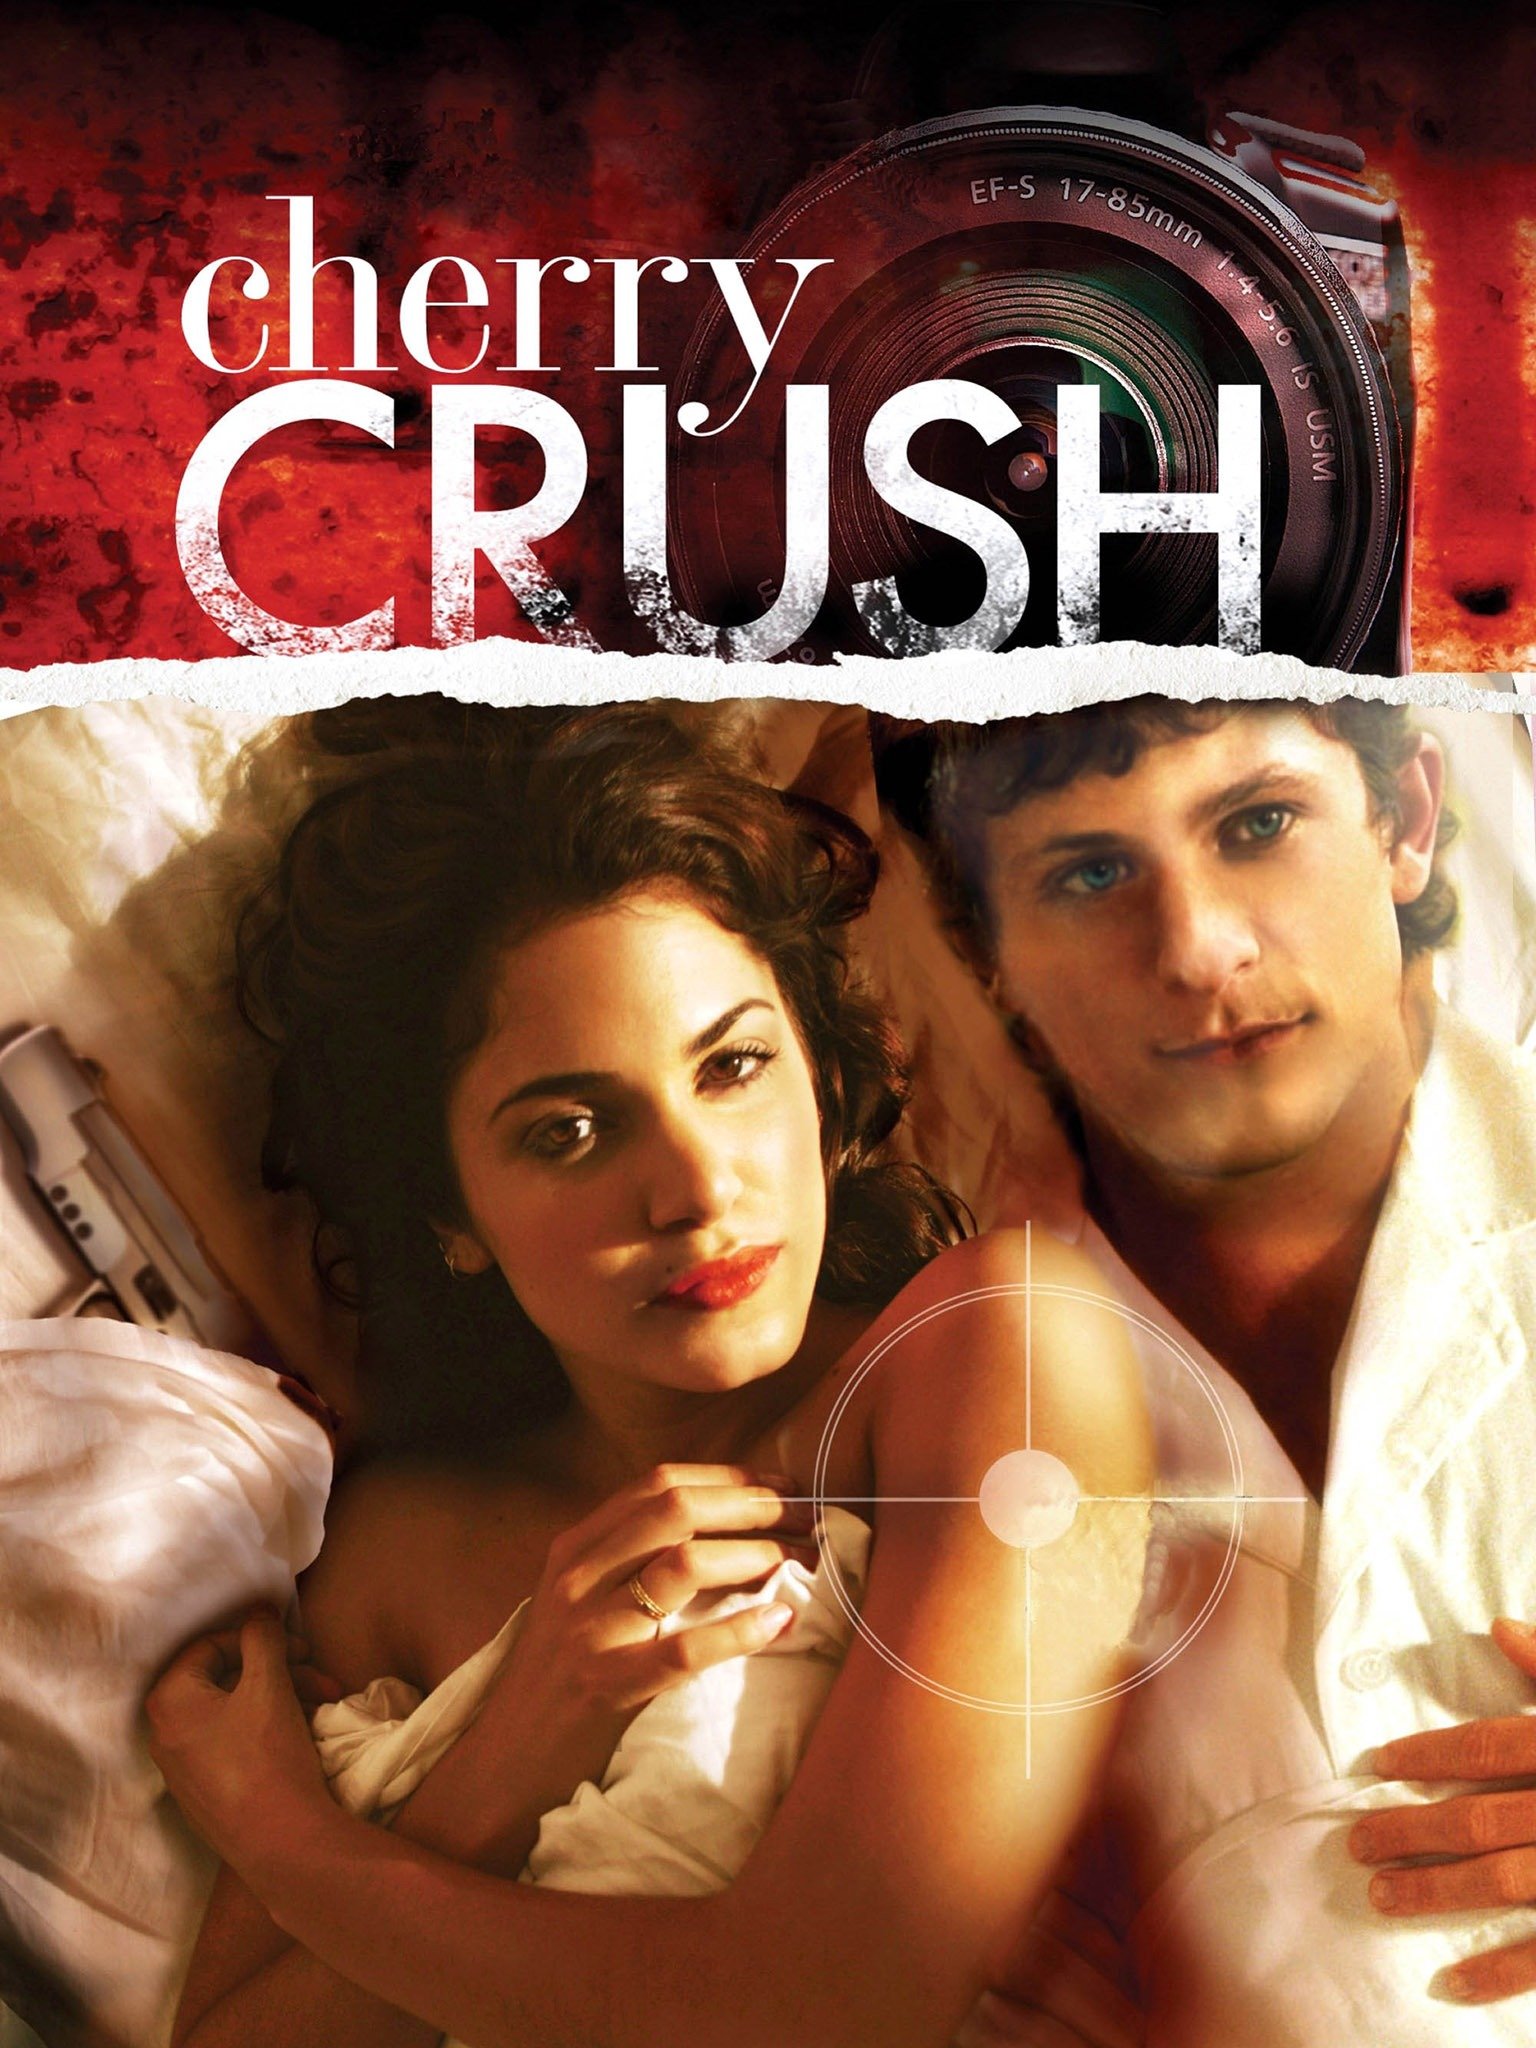 Real cherry name crush READ Cherry